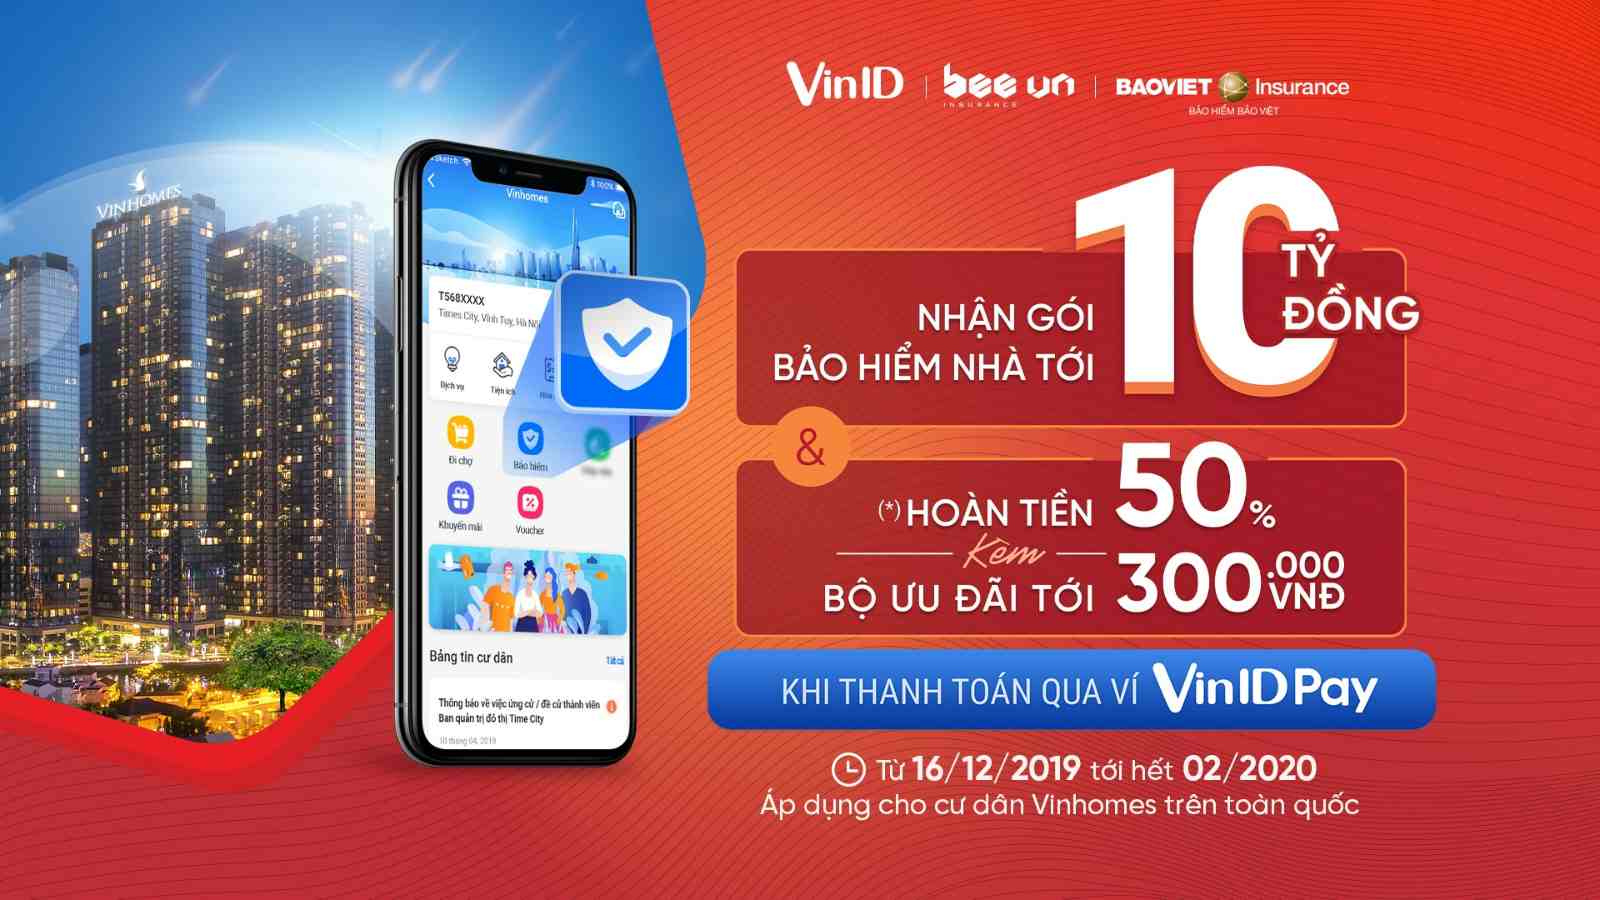 Cư dân ơi! Mua gói bảo hiểm Vinhomes và nhận ưu đãi ngay trên app VinID.